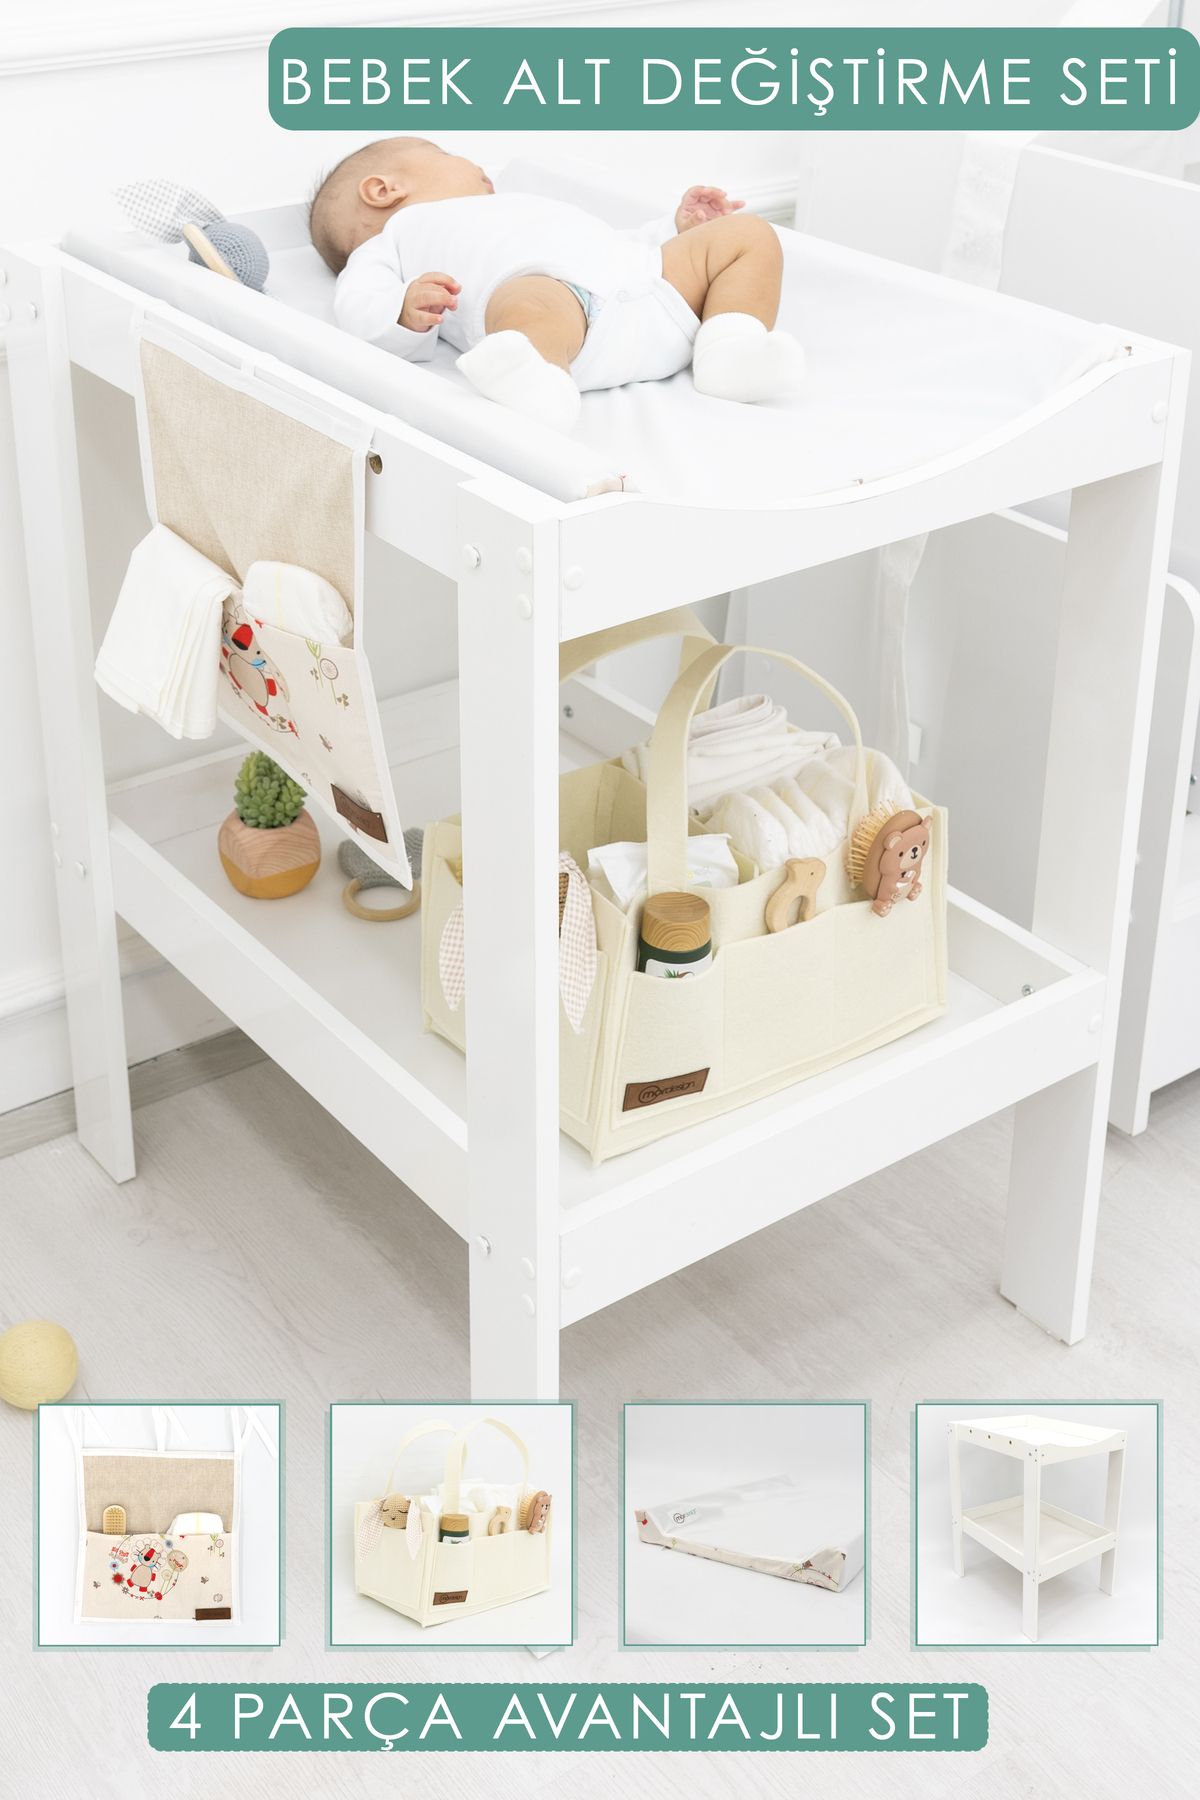 mordesign Bebek; 4'lü Avantajlı Set, Bebek Alt Değiştirme Masası, Pedi, Bağlamalı /sepet Organizer, Beyaz